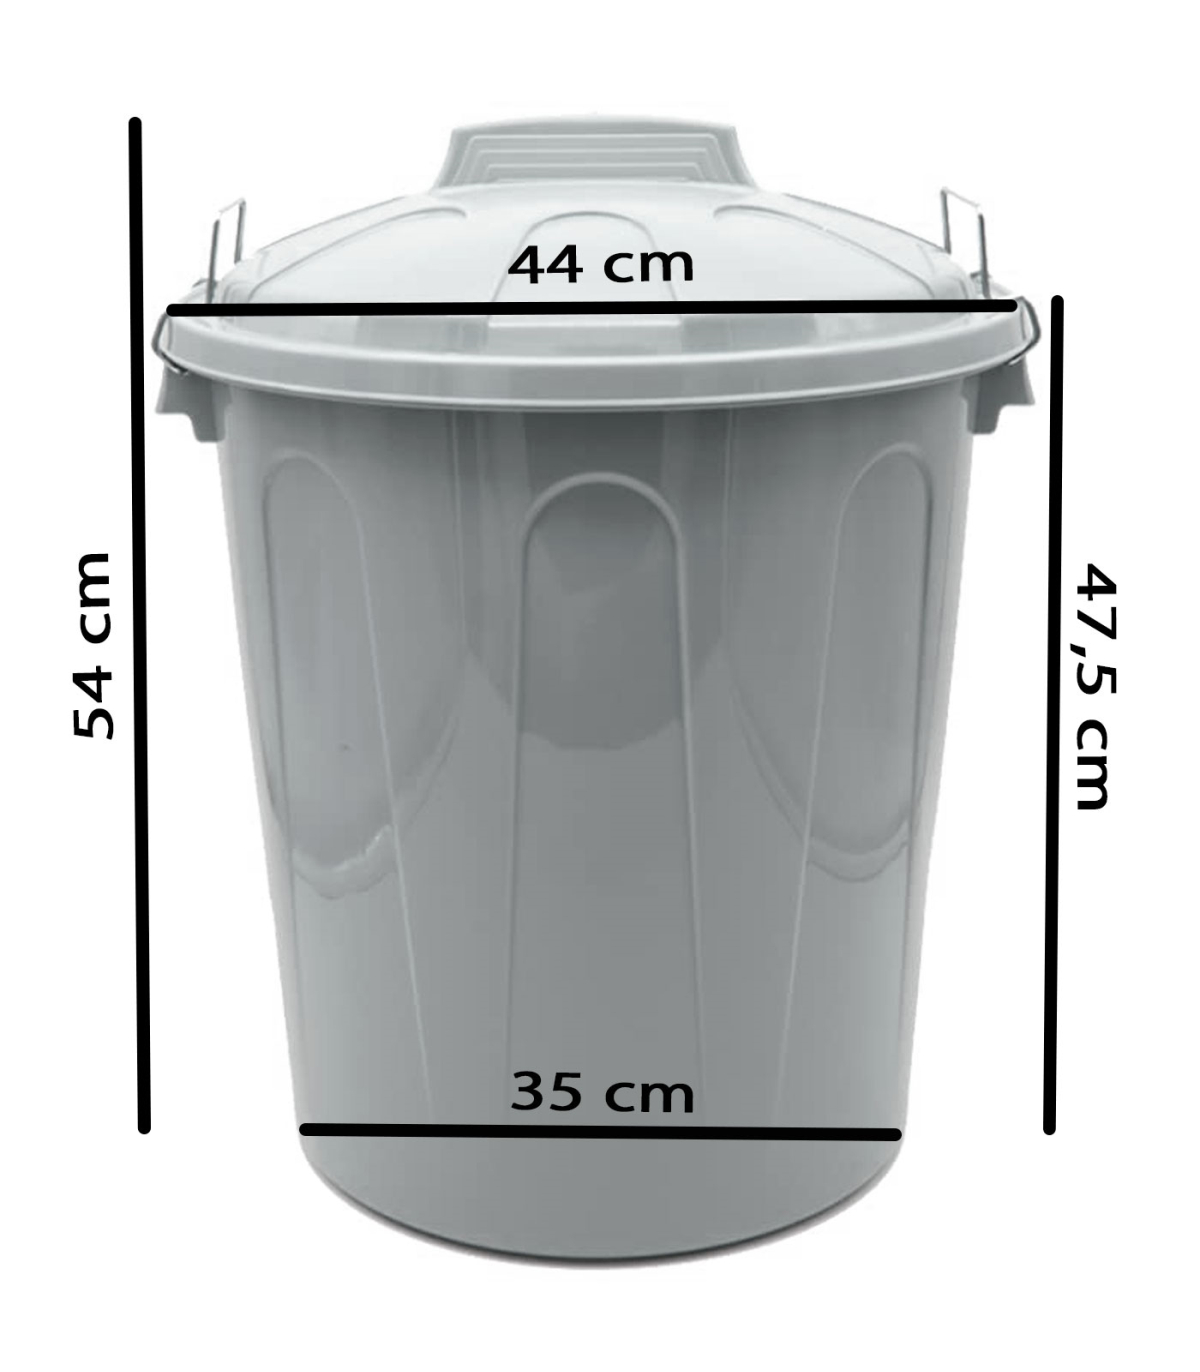 Tradineur - Cubo de basura con pedal y recipiente interior, plástico,  contenedor de residuos, papelera de cocina, reciclaje (Azu